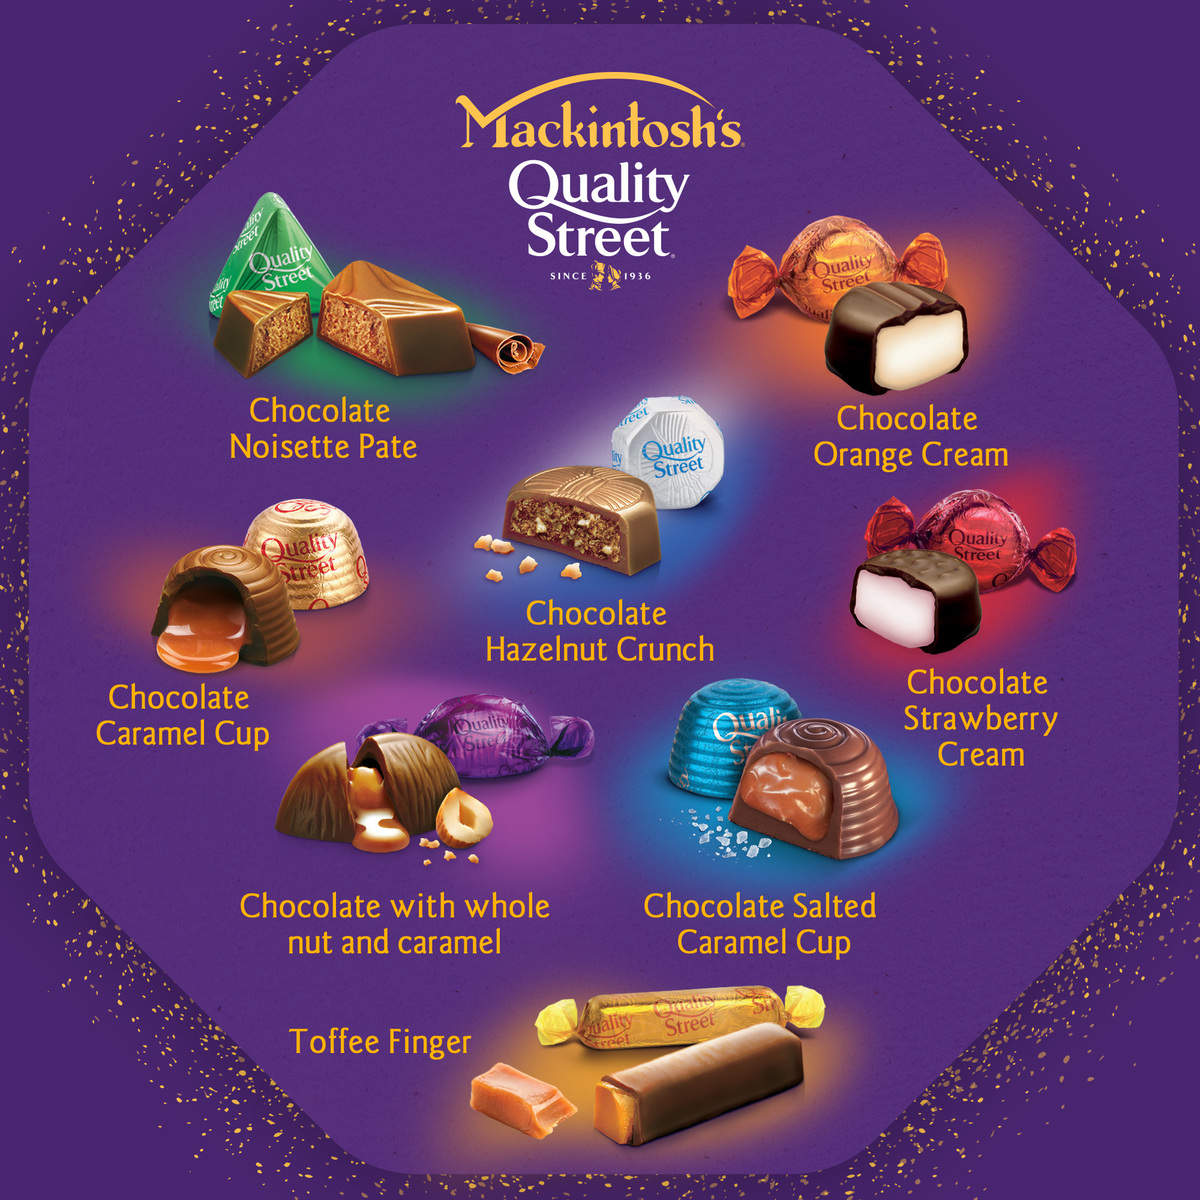 Mackintosh's Quality Street Chocolate 850 g